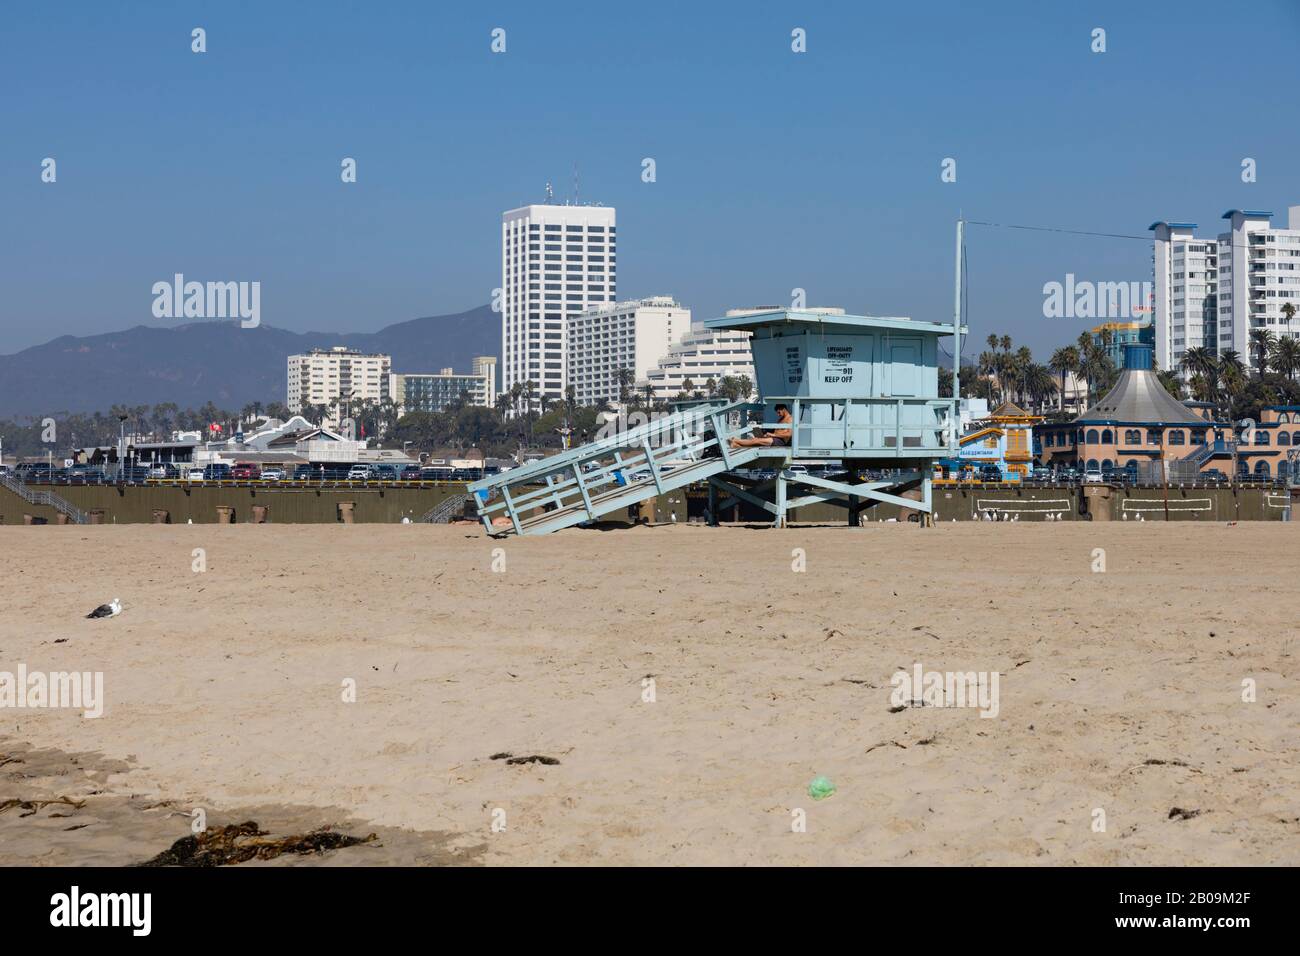 Der Strand und der Rettungsschwimmer Santa Monica. Das höchste Gebäude, 100 Wilshire, befindet sich im Hintergrund von Kalifornien, Vereinigte Staaten von Amerika Stockfoto